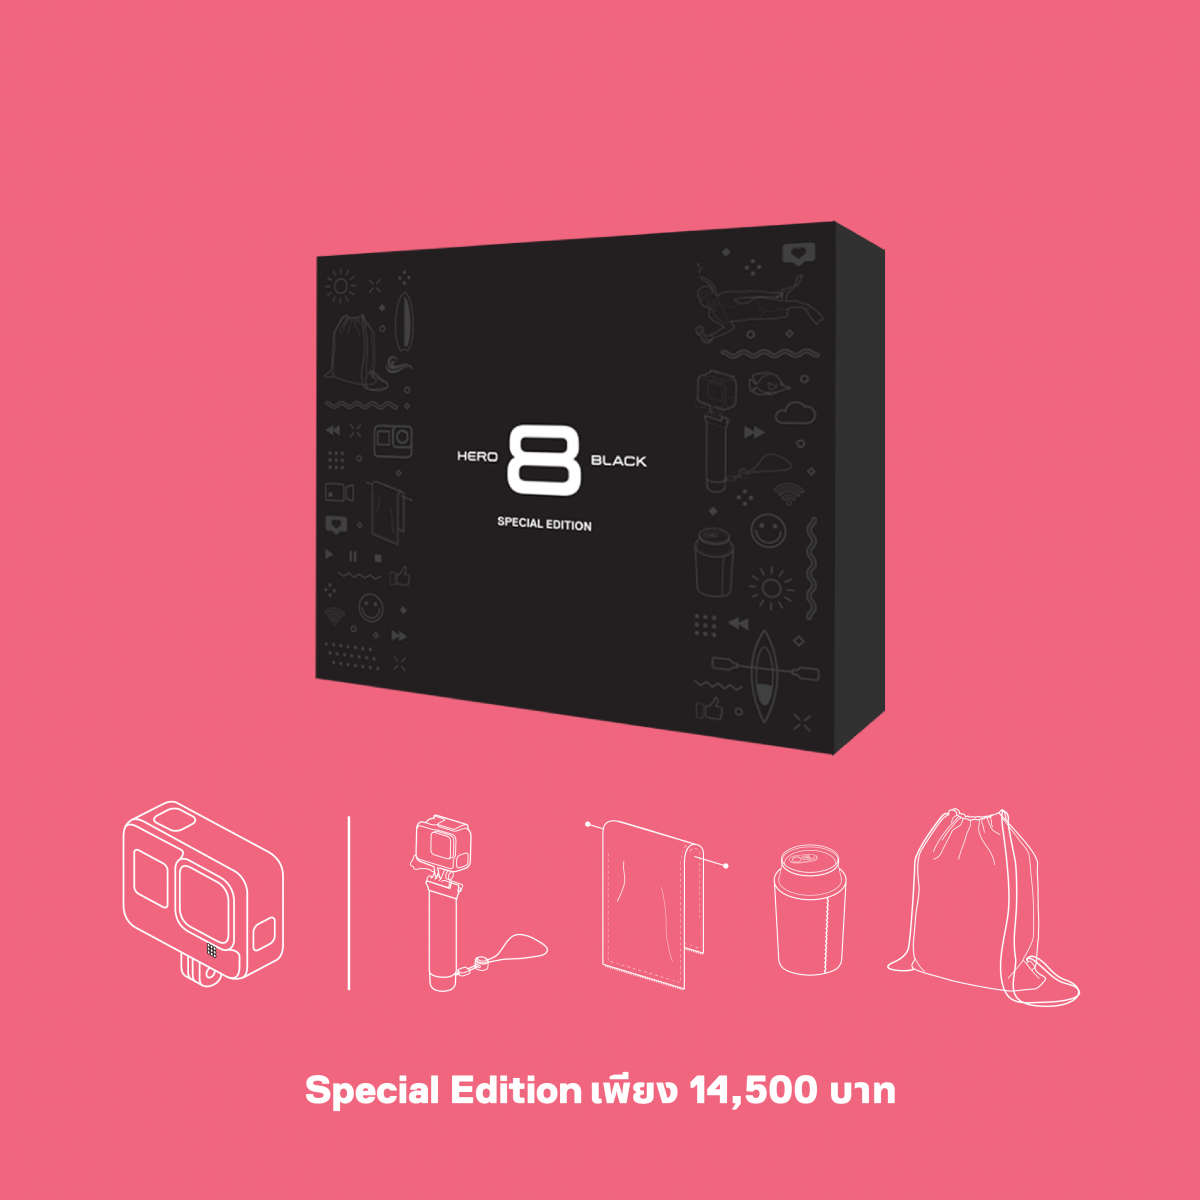 เตรียมพร้อมสำหรับทุกกิจกรรมของคุณแบบ Limited Edition ด้วยเซ็ตกล้อง GoPro HERO8 Black Special Edition สุดคุ้มในราคาเพียง 14,500